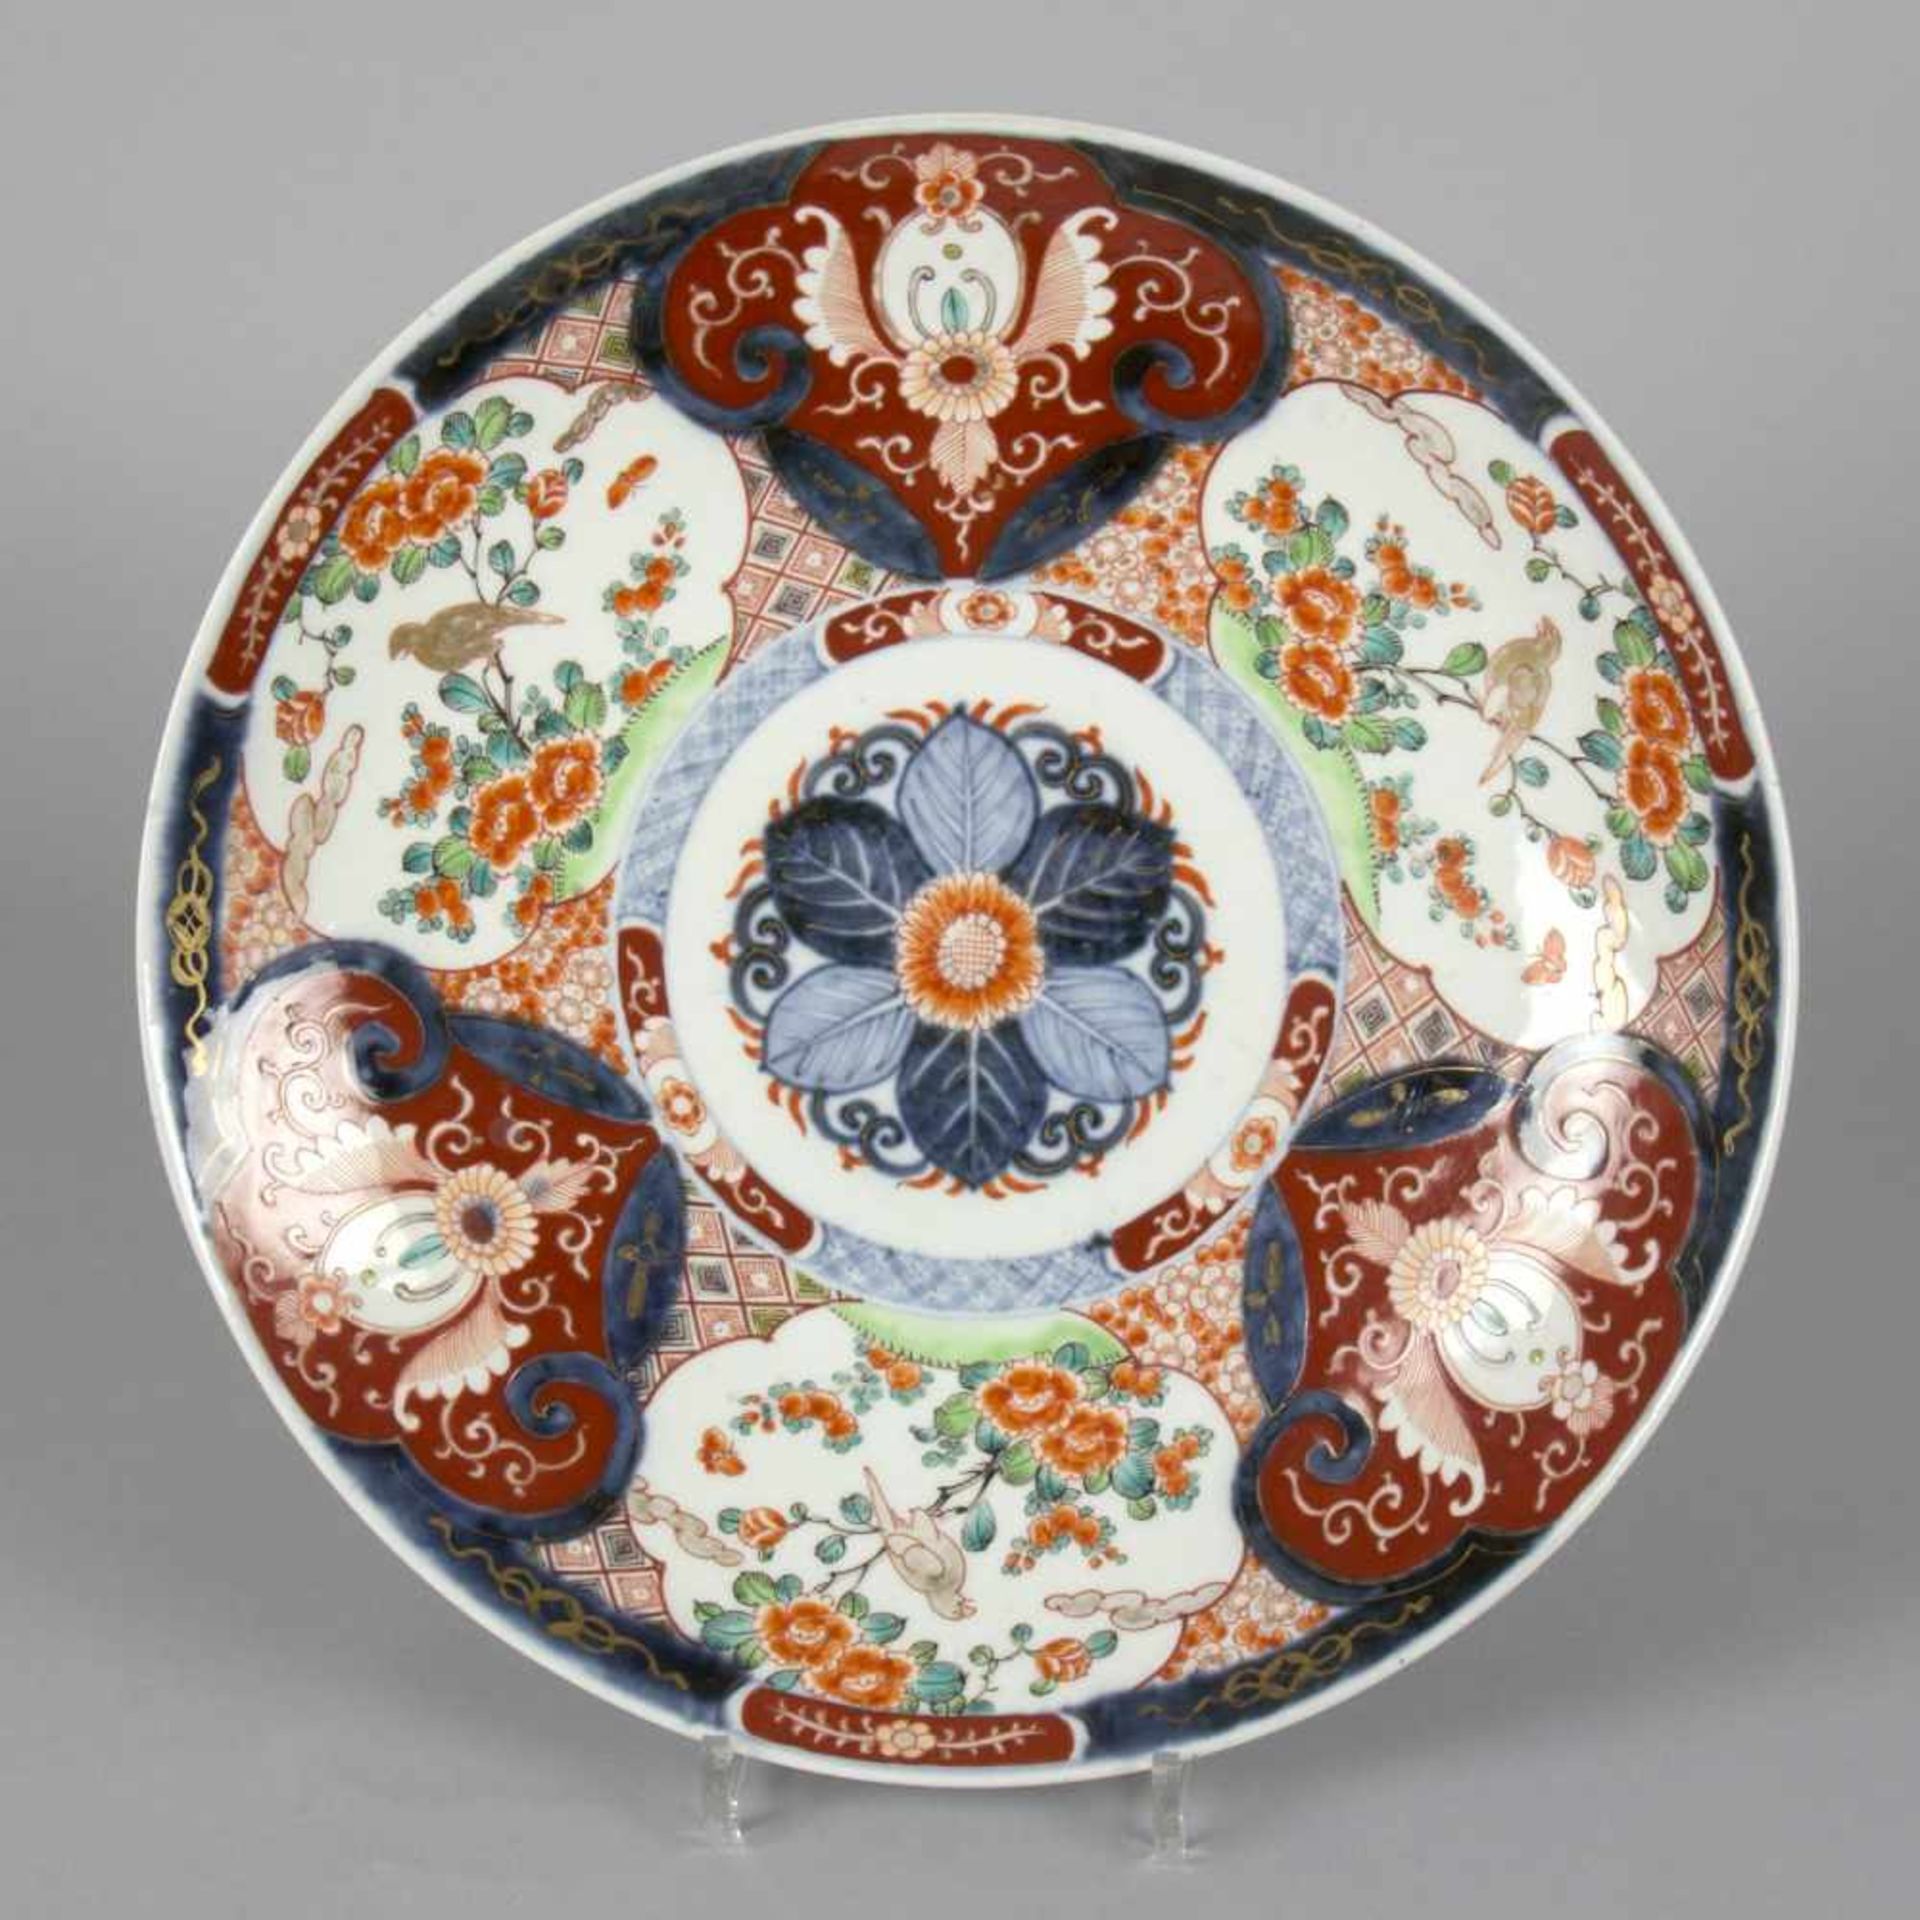 Imari-TellerPorzellan. Runde Form. Polychromer Imari-Dekor mit Vögeln und floralen Motiven.